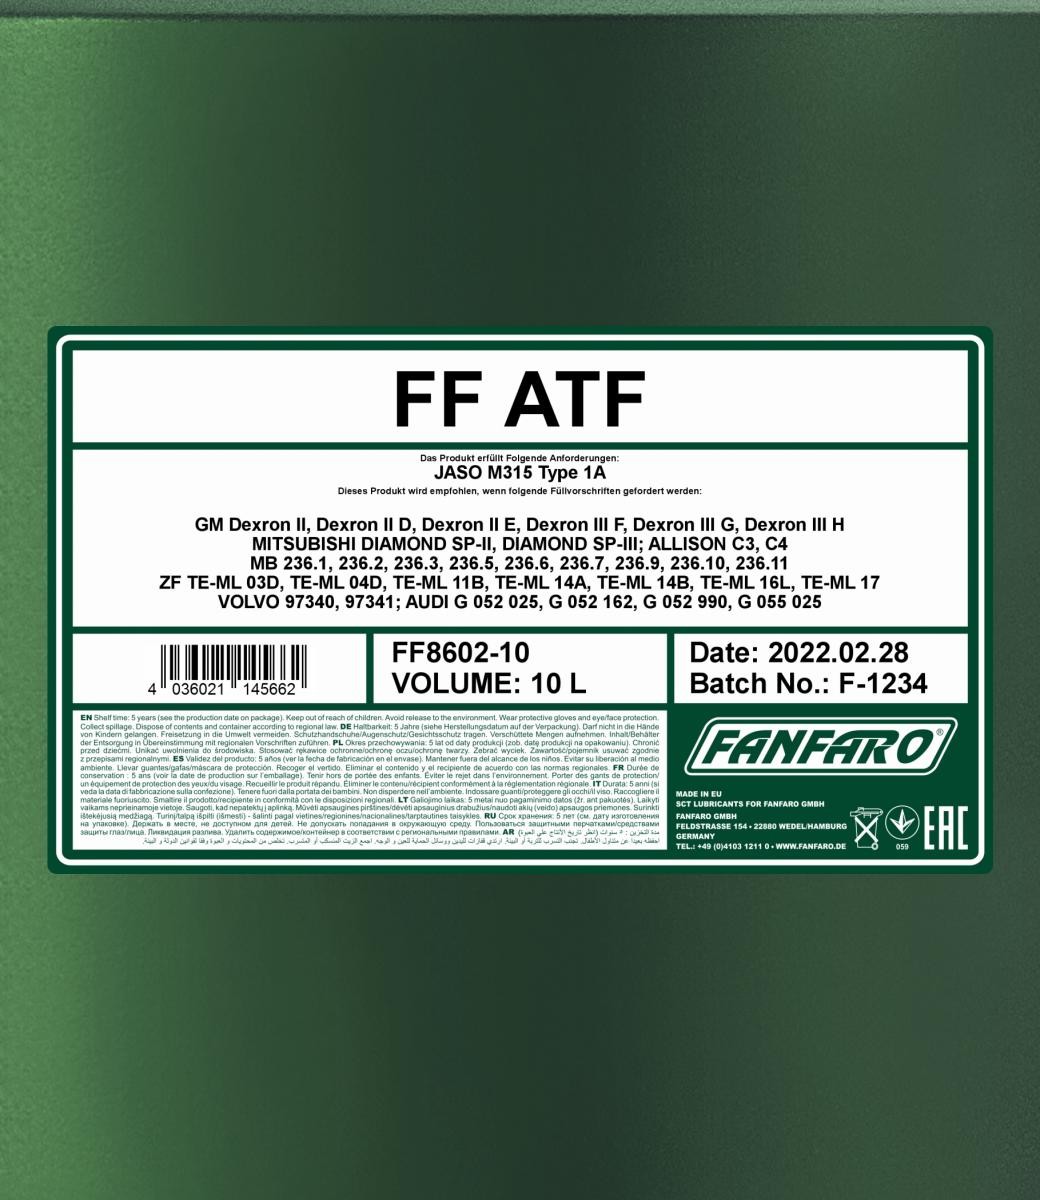 FANFARO Automatic transmission fluid FF8602-10